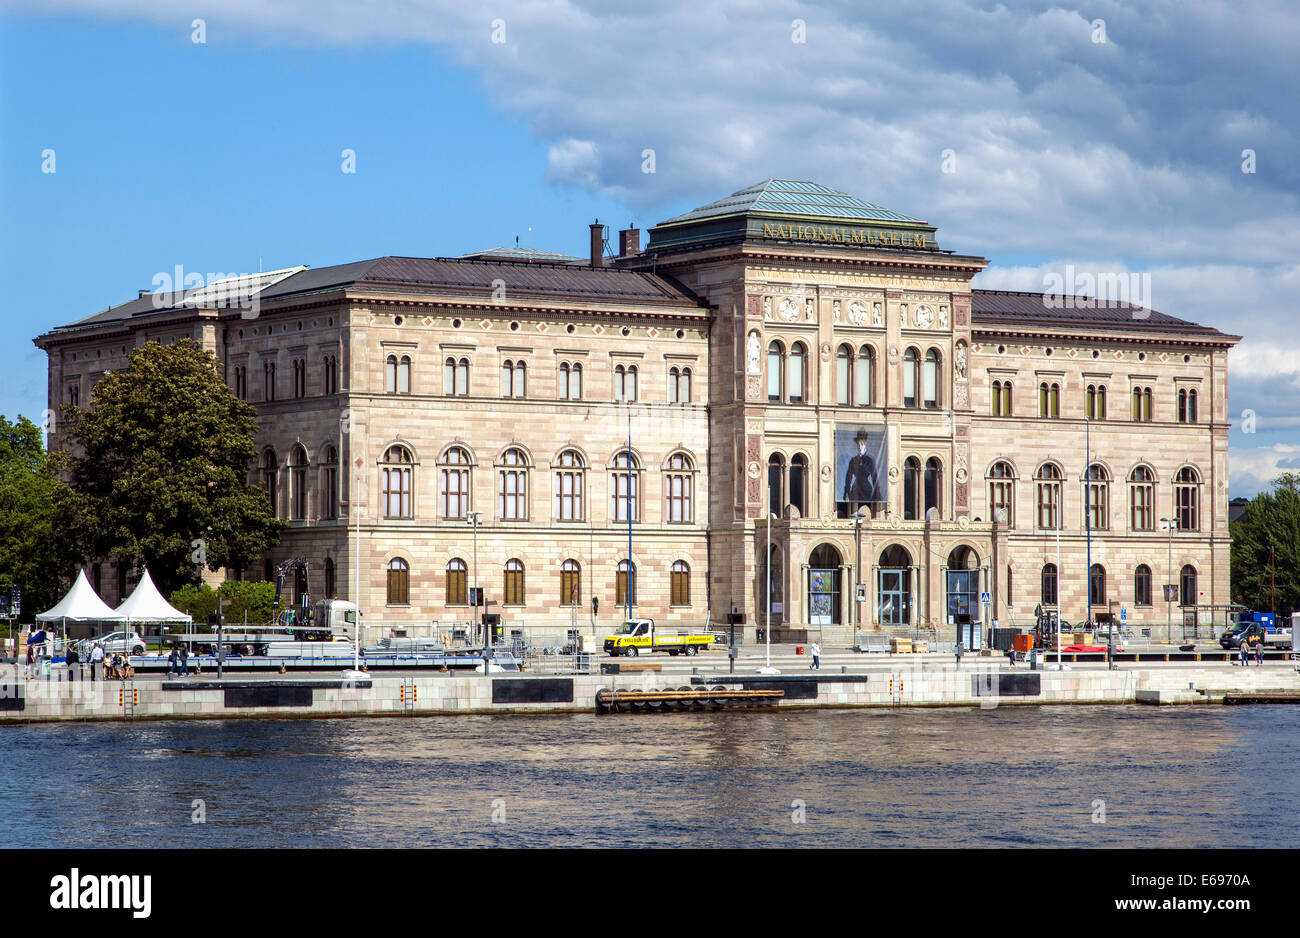 Nationalmuseum oder National Museum of Fine Arts, Kunstsammlung, Kunstgalerie, vom Architekten Friedrich August Stüler, Stockholm Stockfoto